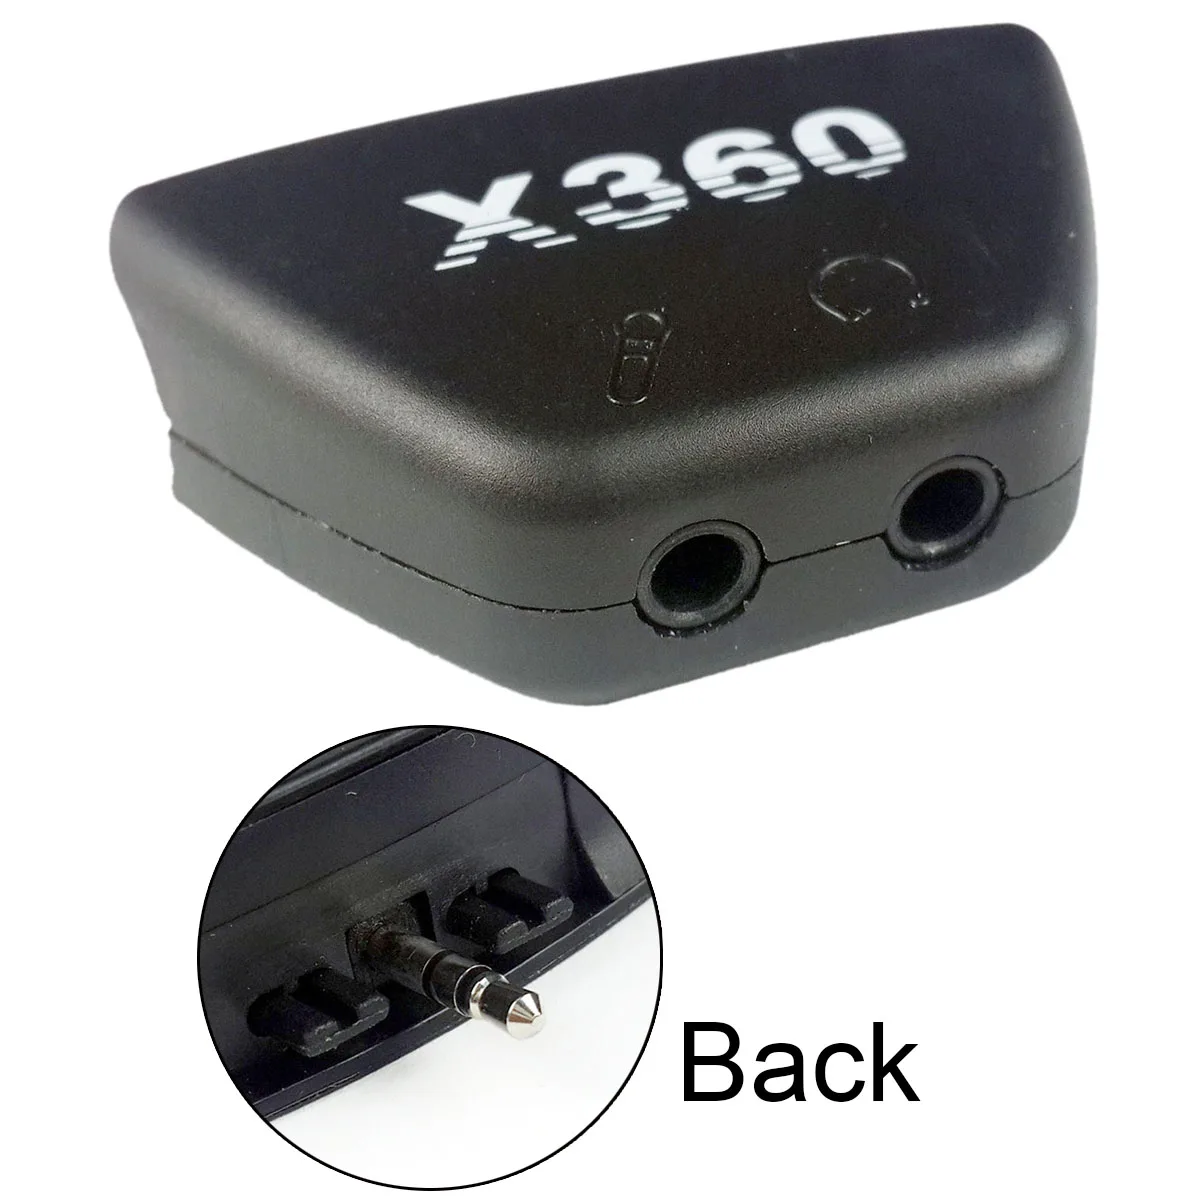 Конвертер для наушников XBOX360 для конвертации наушников XBOX360 для конвертера XBOX360